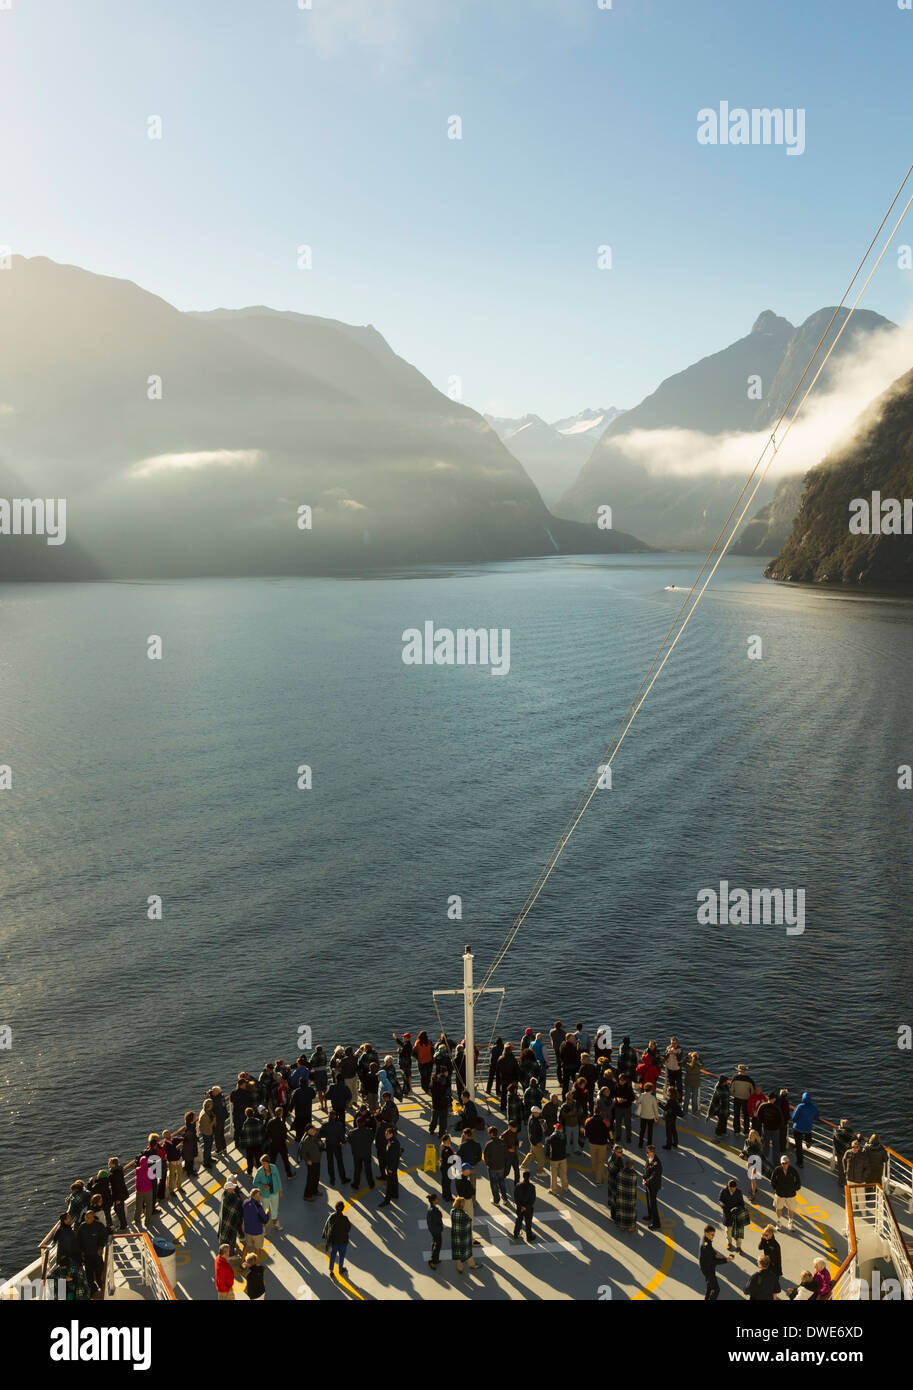 Le Parc National de Fiordland, Nouvelle-Zélande - bateau de croisière naviguant dans Milford Sound, île du Sud, Nouvelle-Zélande Banque D'Images